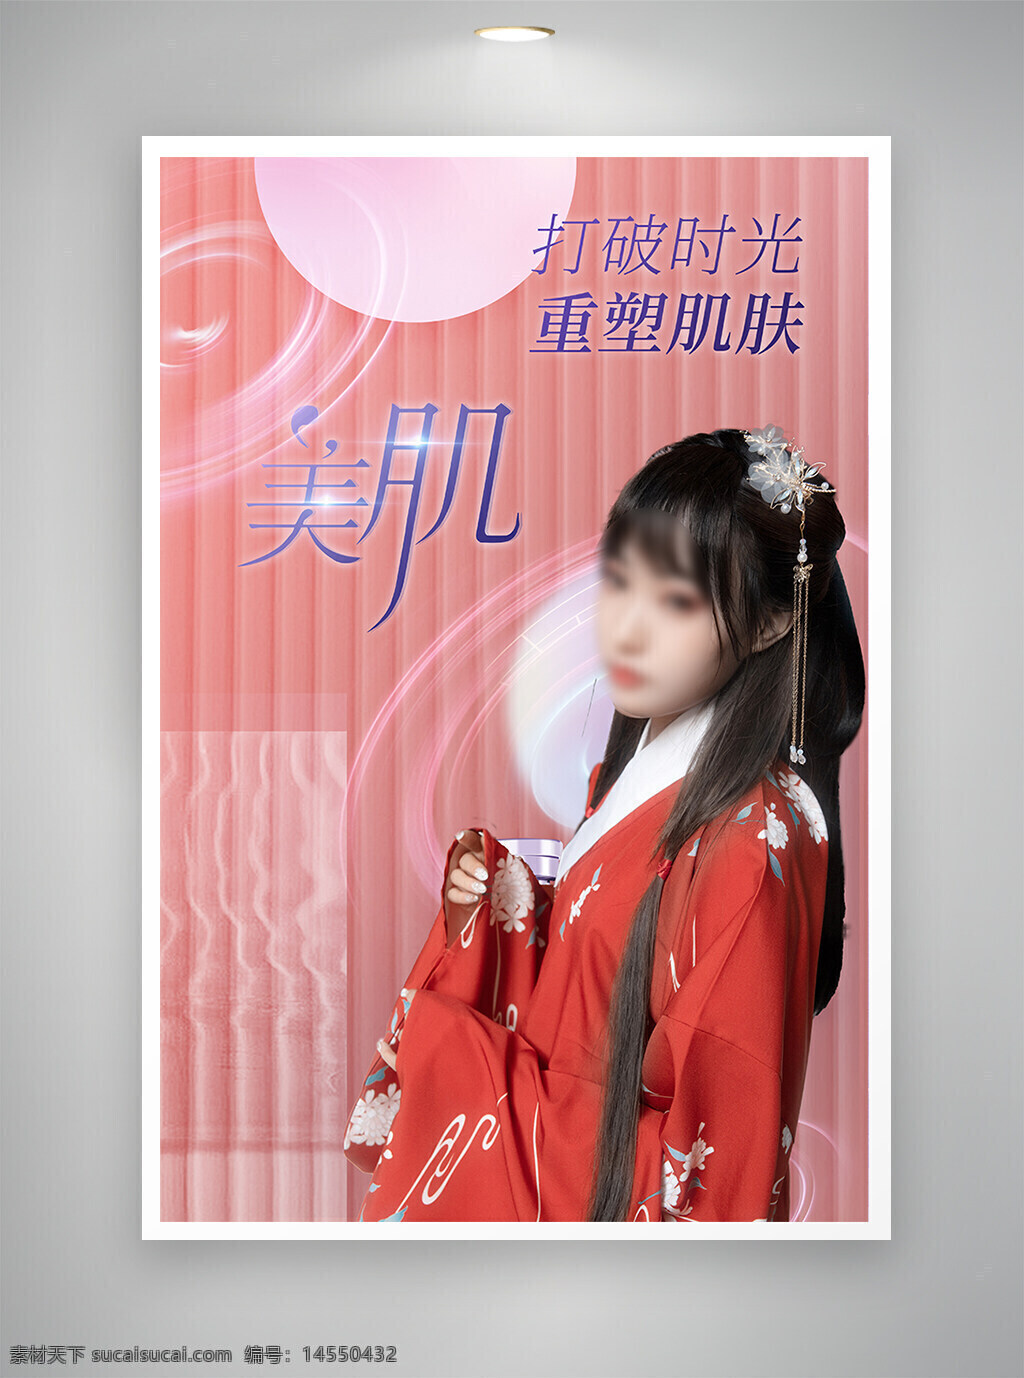 中国风海报 促销海报 古风海报 节日海报 医美海报